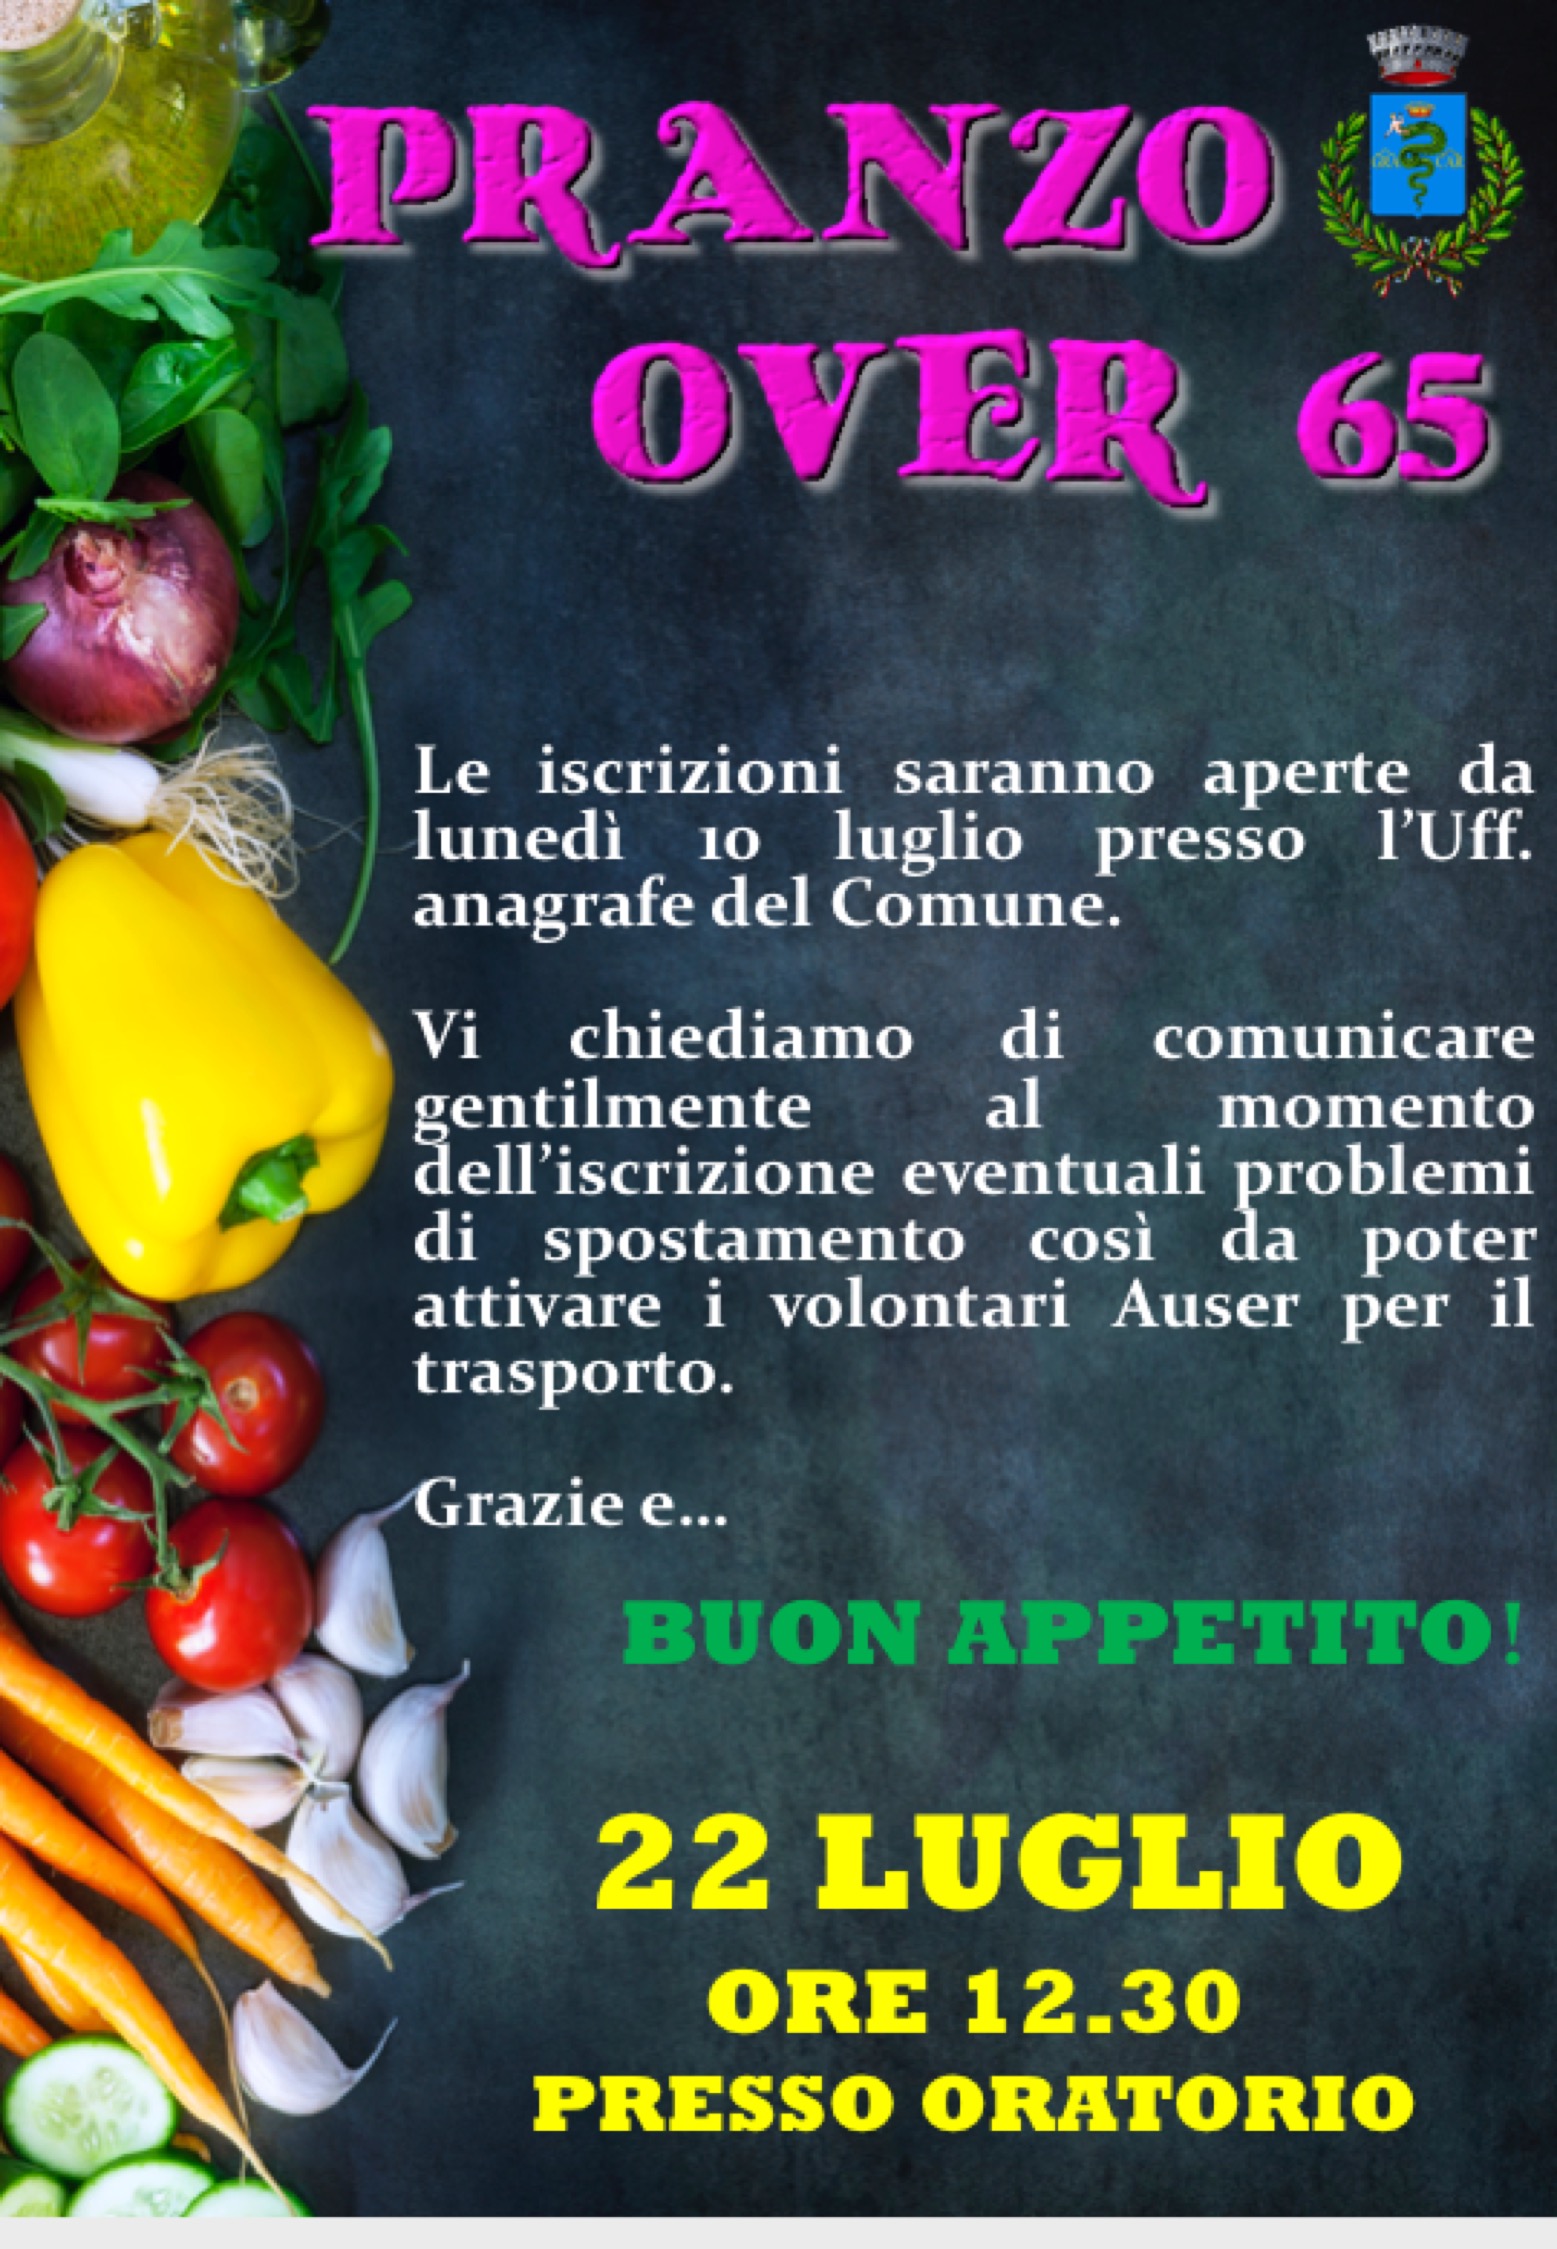 Pranzo Over 65 - luglio 2019 - Certosa di Pavia